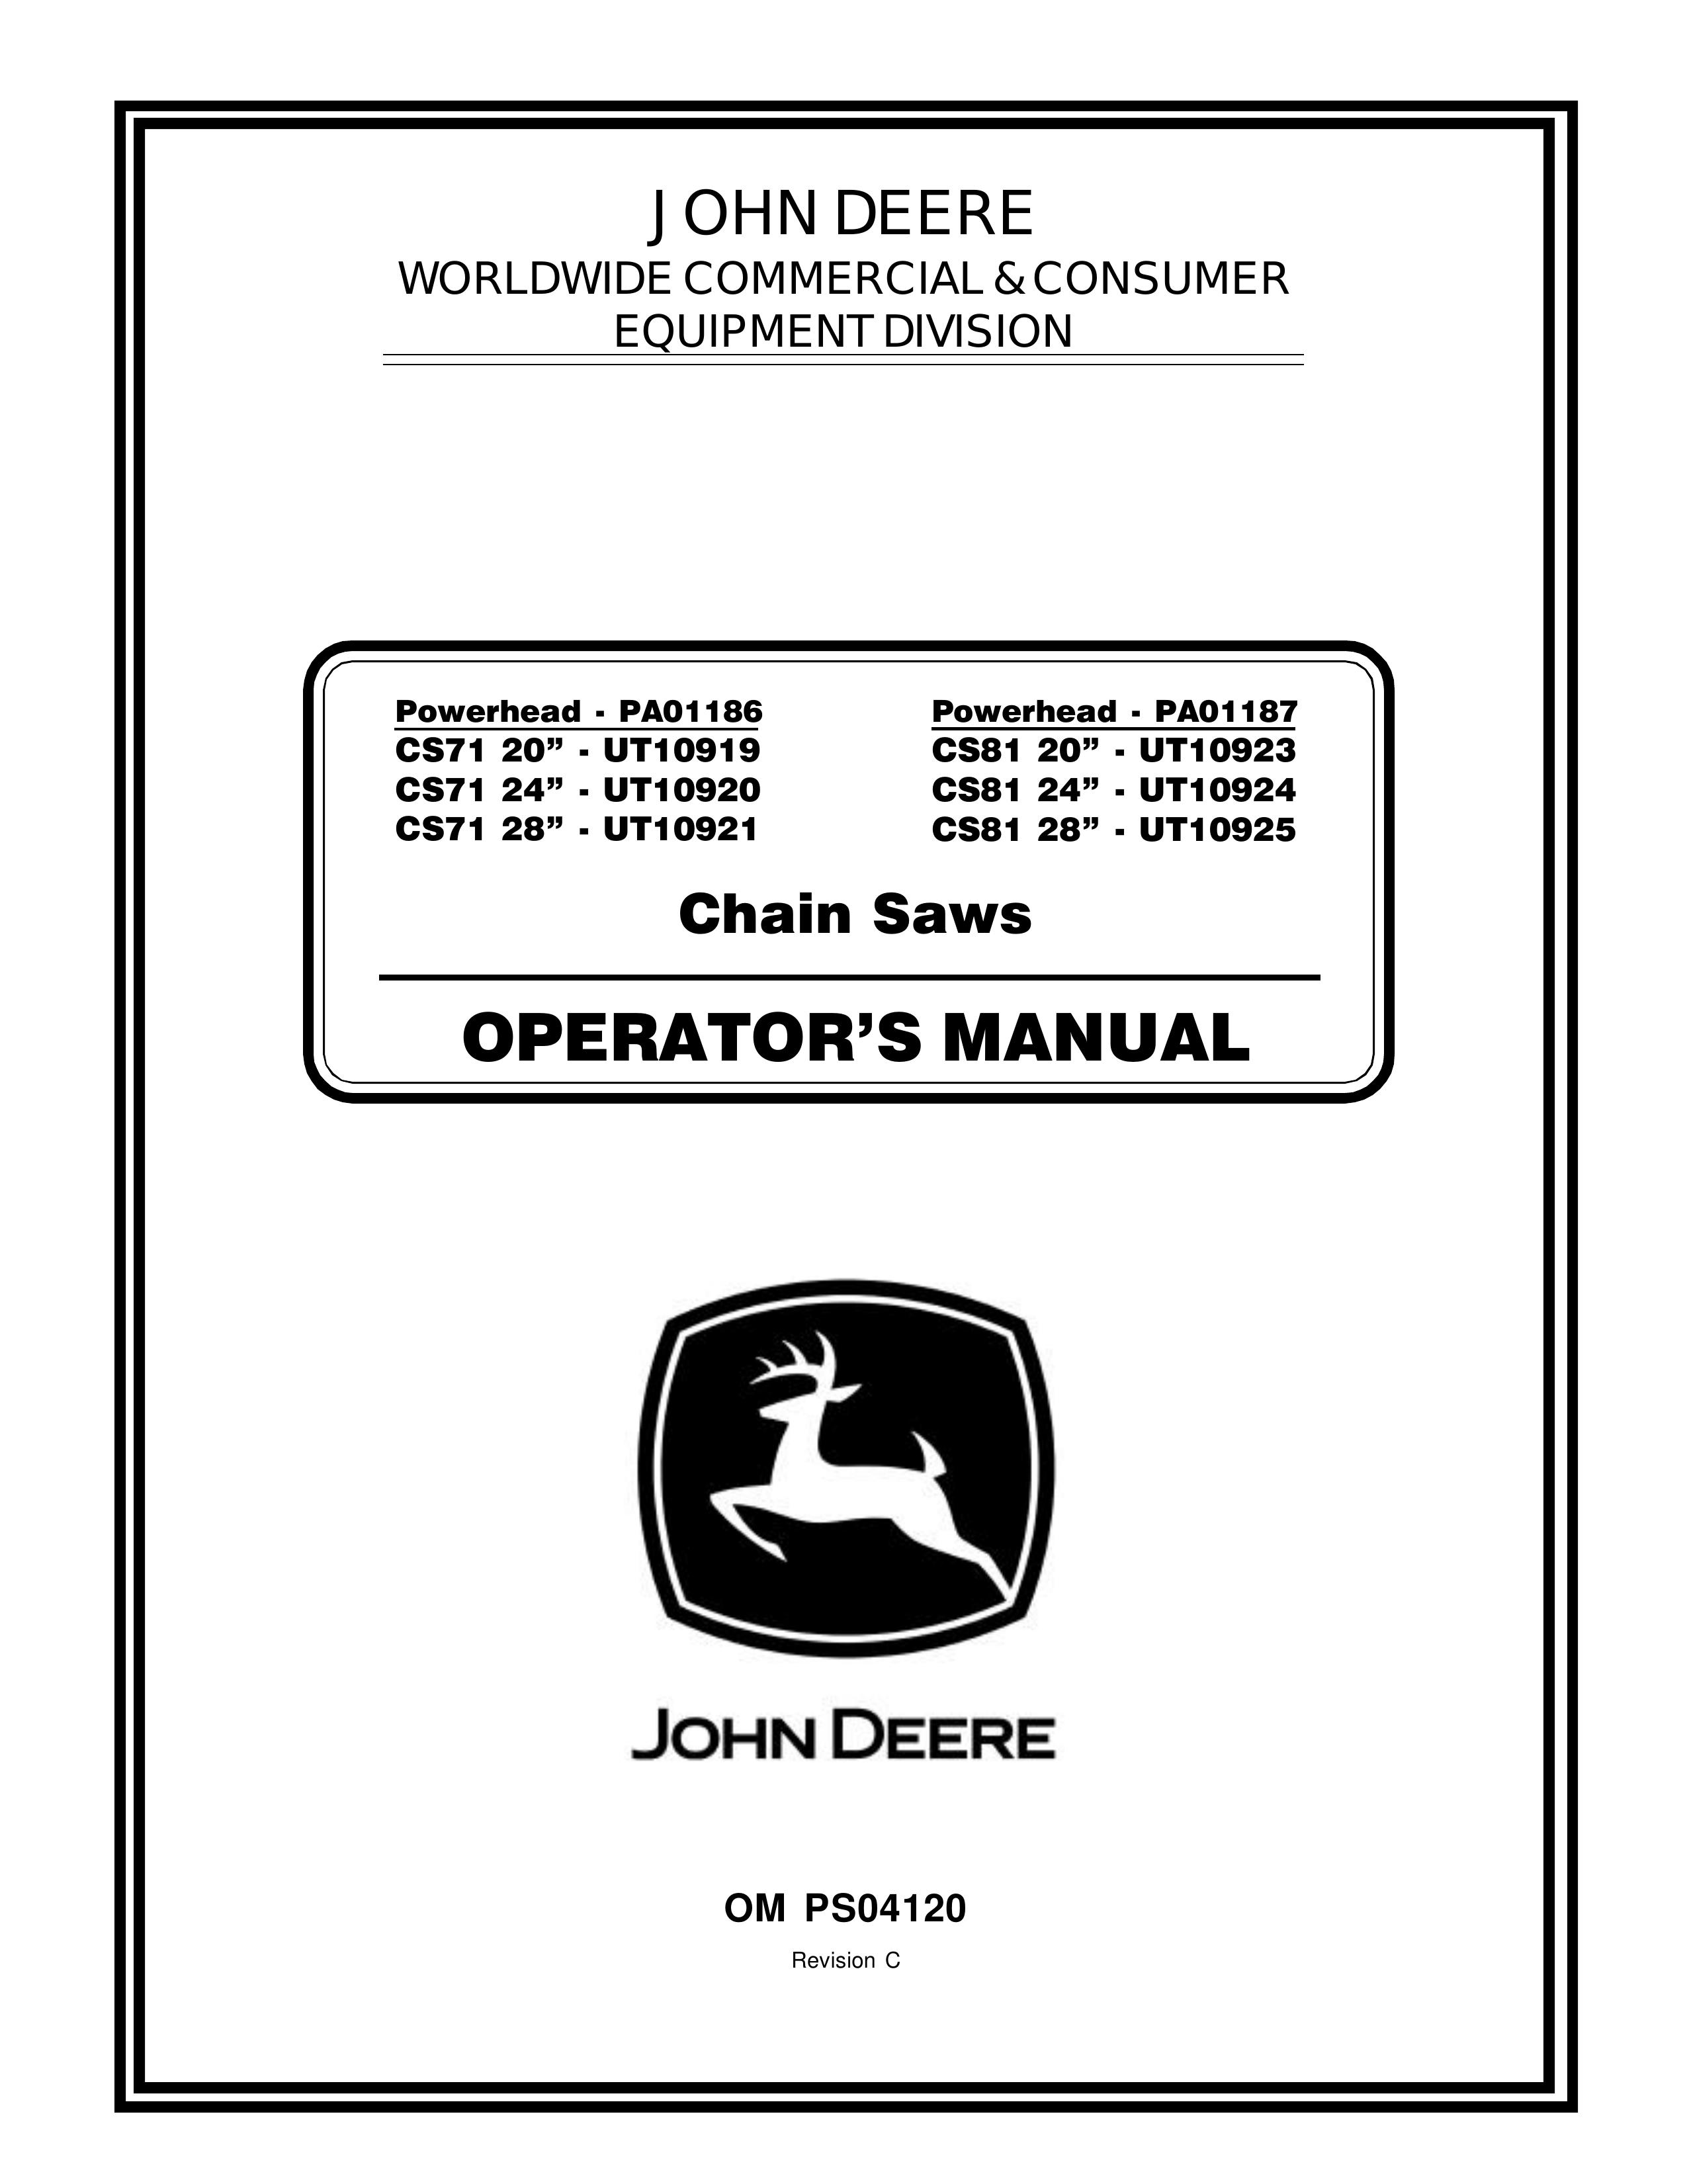 John Deere CS71 - UT10919, CS71 - UT10920, CS71 - UT10921, CS81 - UT10923, CS81 - UT10924, CS81 - UT10925 Chainsaw User Manual